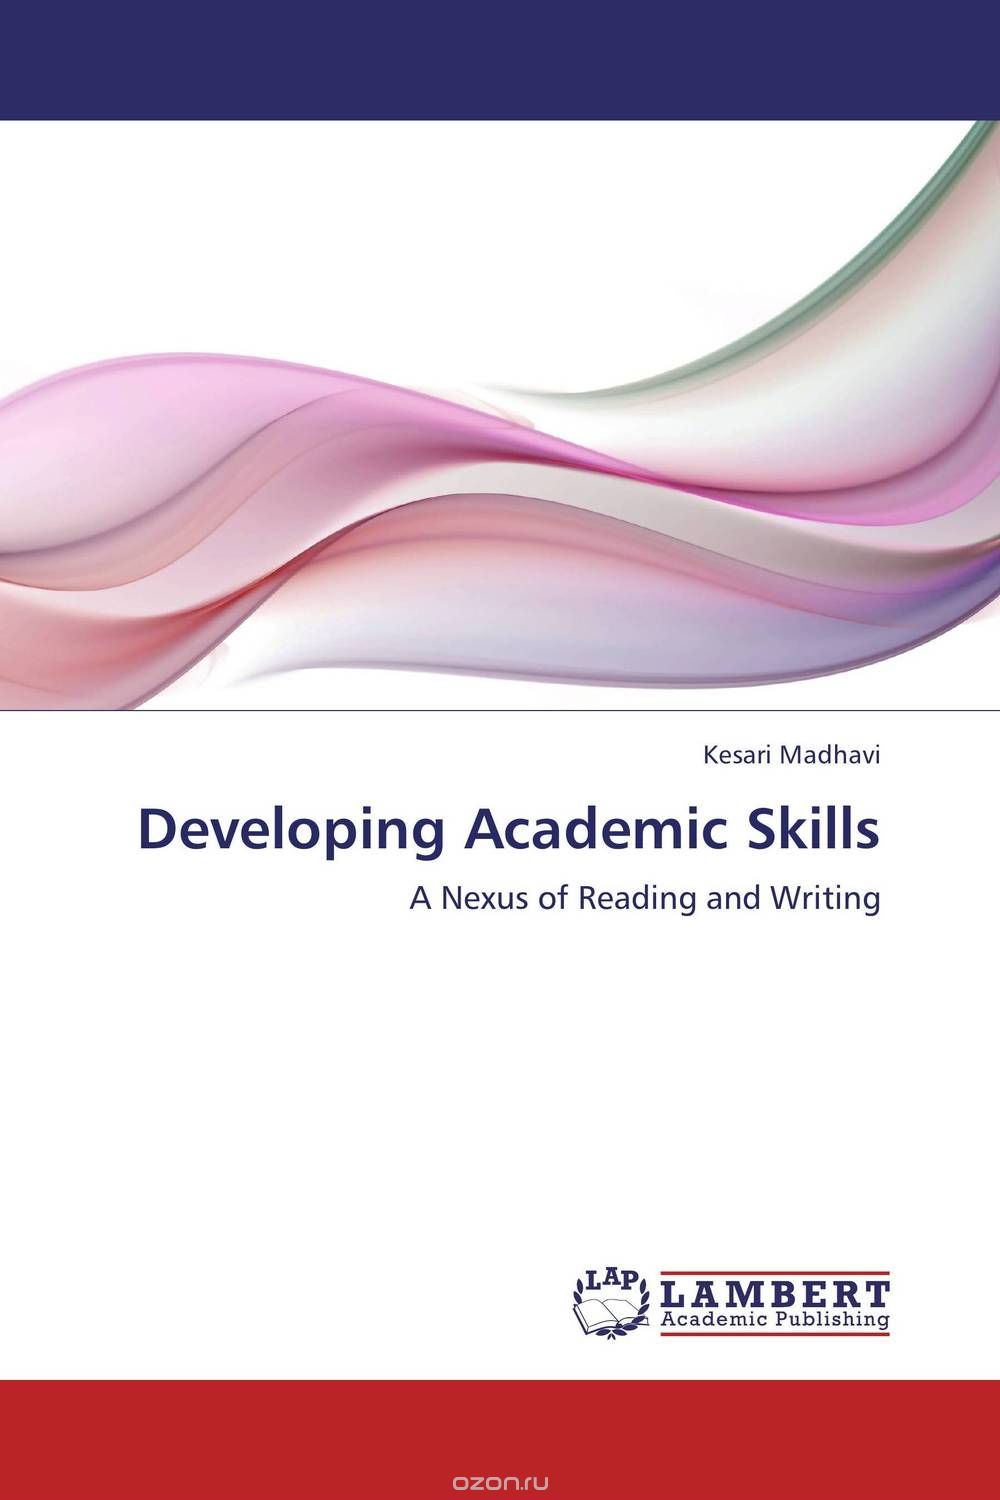 Скачать книгу "Developing Academic Skills"